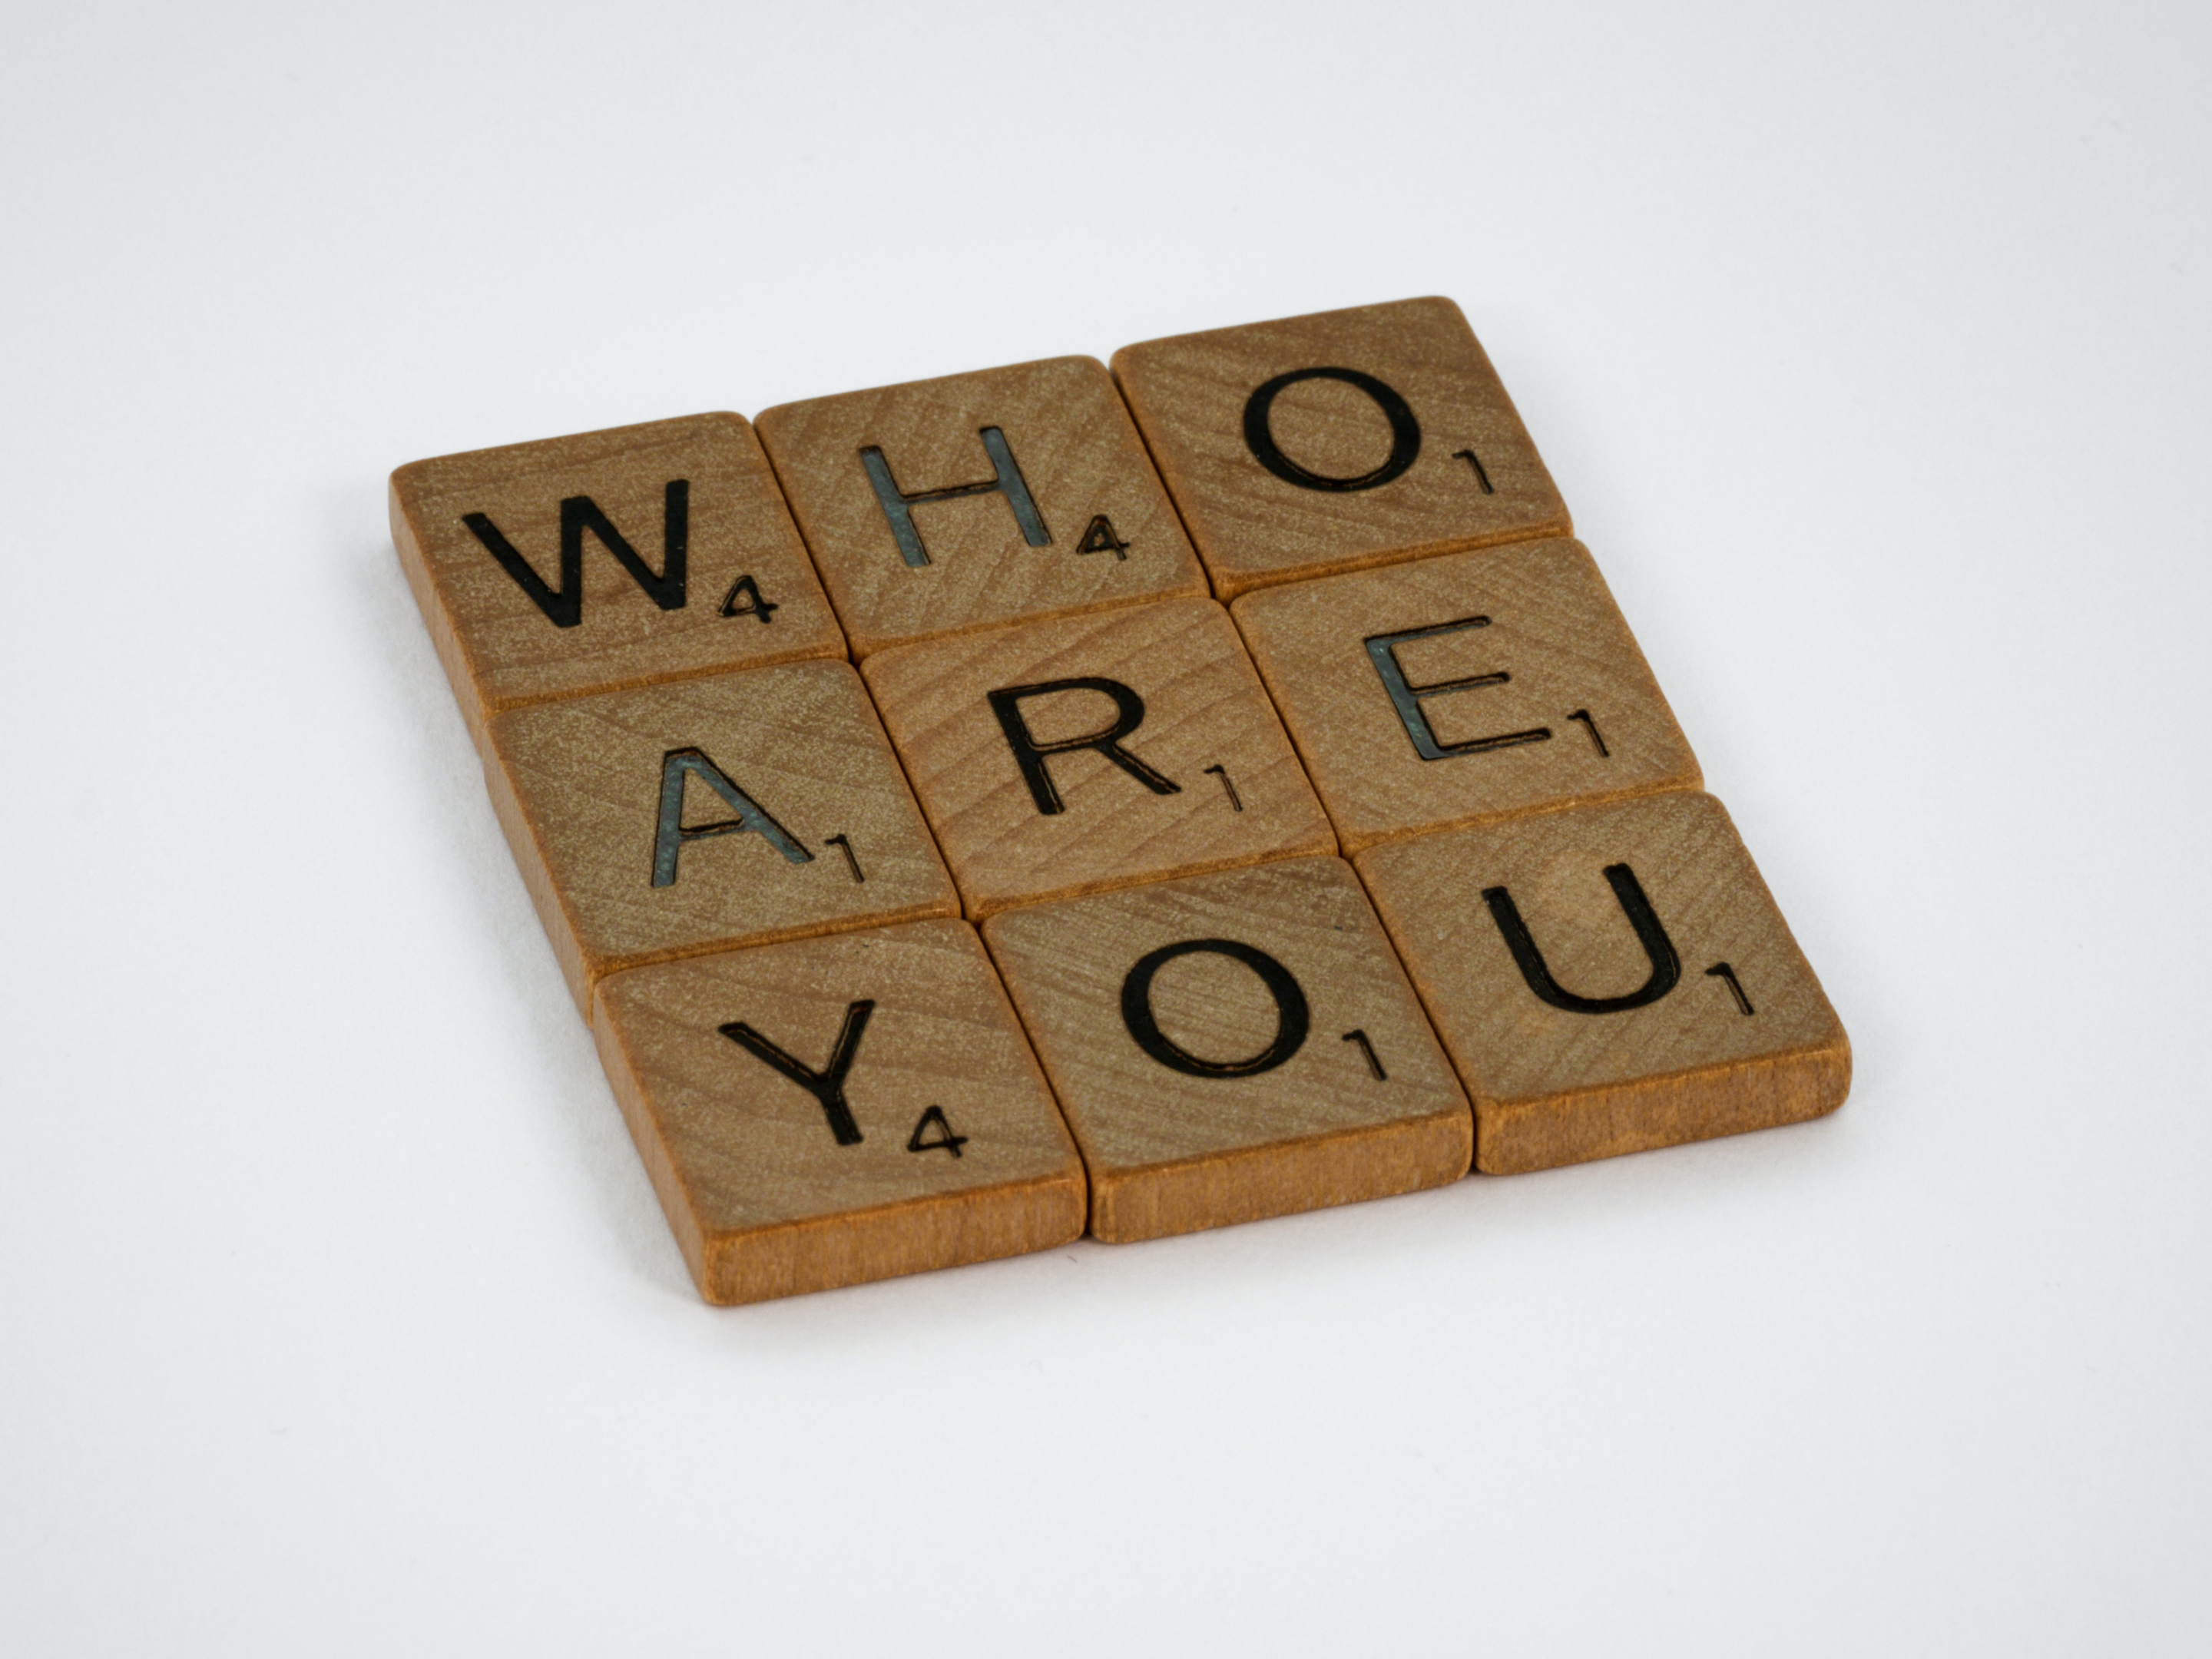 Des dès d'alphabat en bois où on peut lire la phrase "Who are you". 
L'identité de marque d'une entreprise est essentielle pour bâtir une solide image de marque.